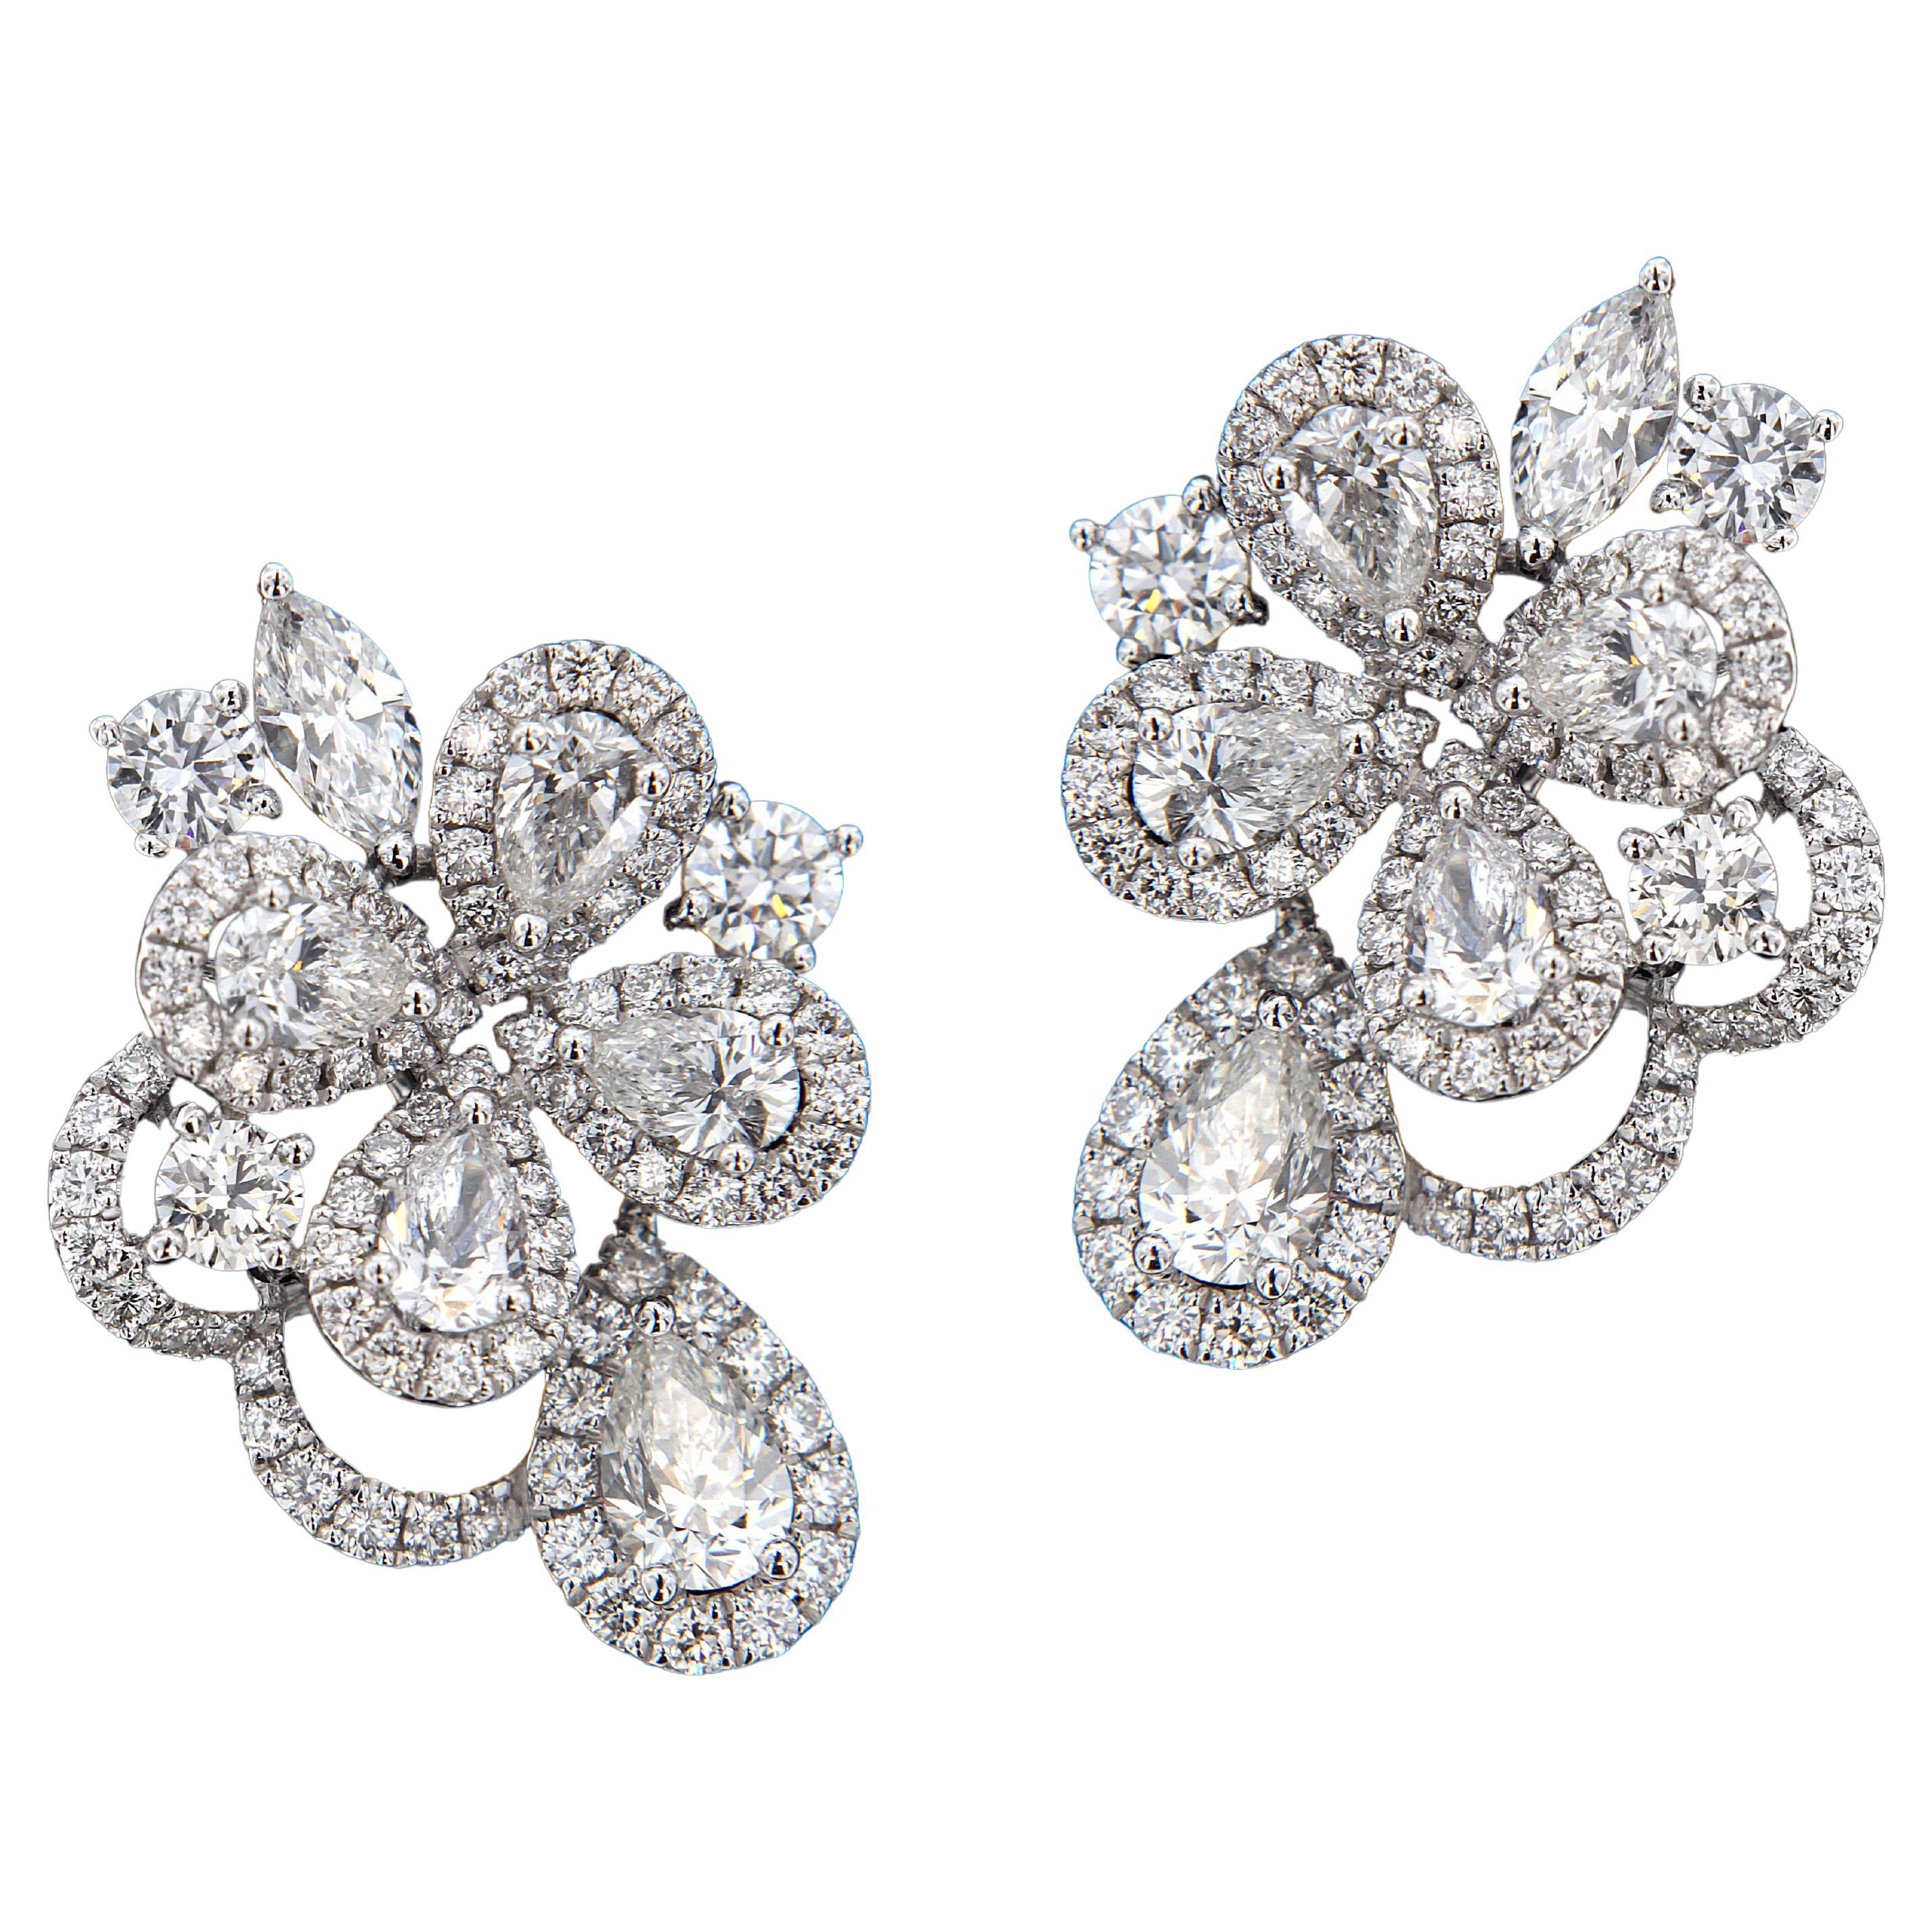 Elegant 18 Karat White Gold and Diamond Stud Earrings